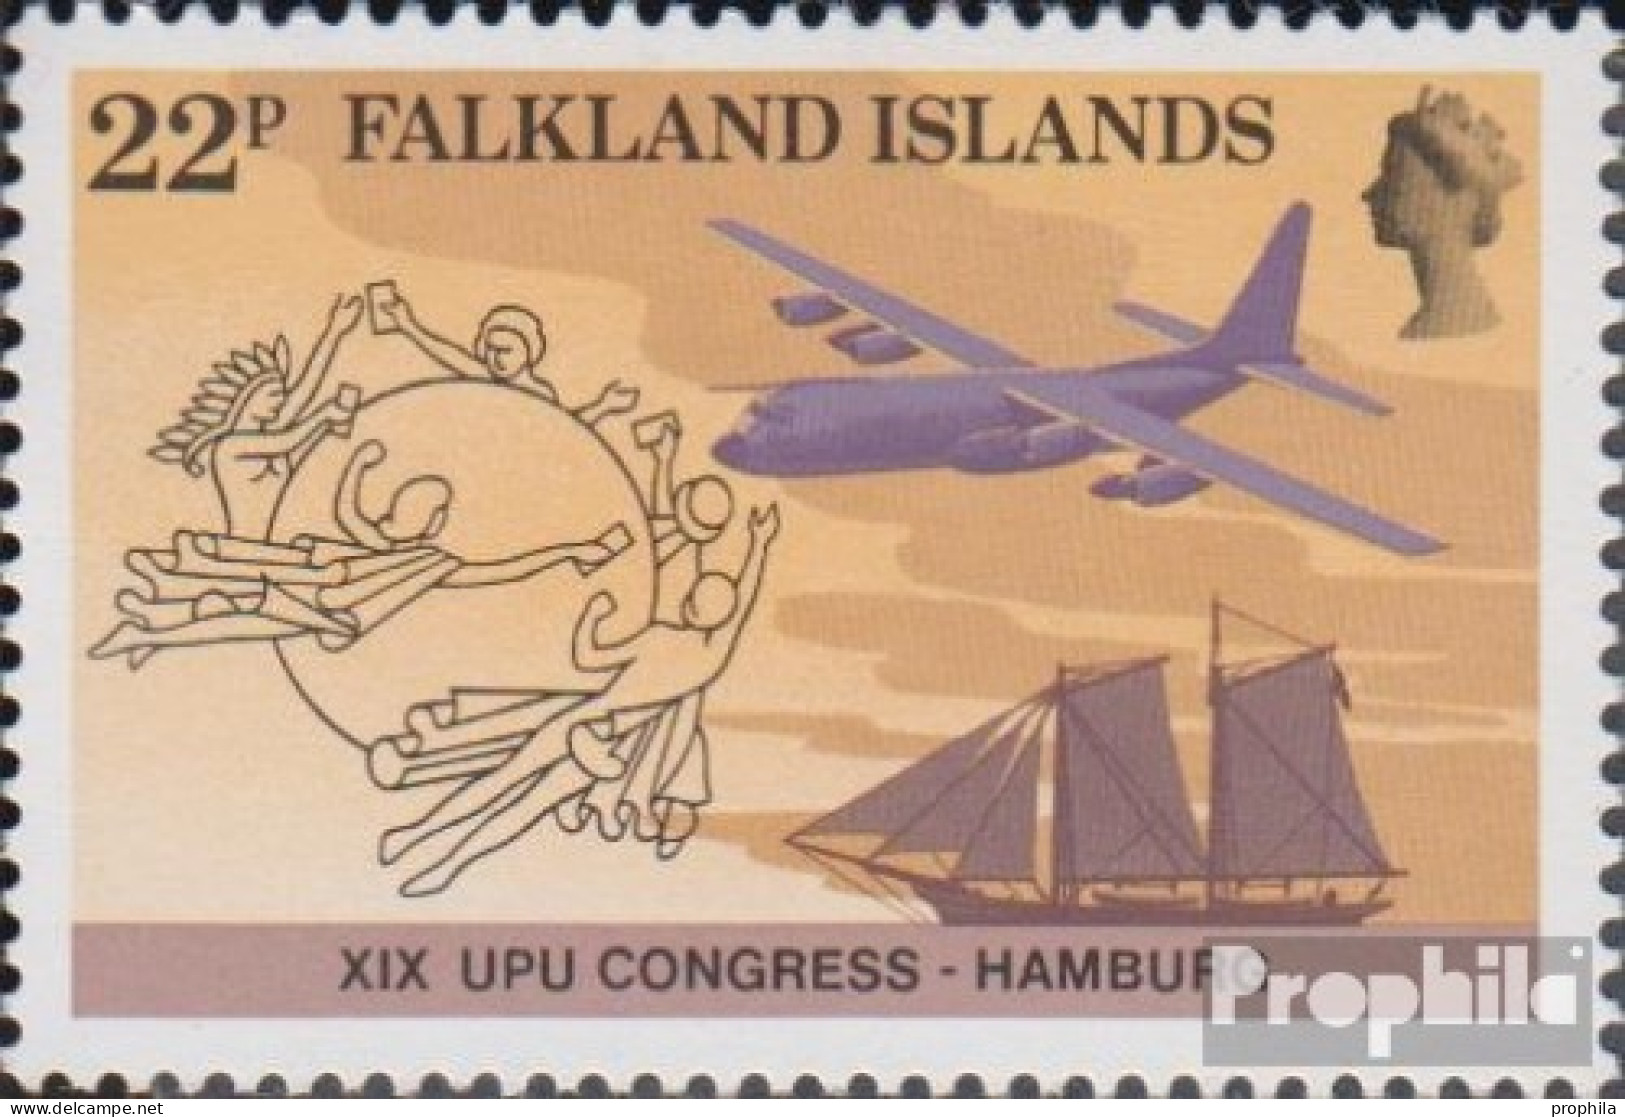 Falklandinseln 411 (kompl.Ausg.) Postfrisch 1984 Weltpostkongreß - Falkland